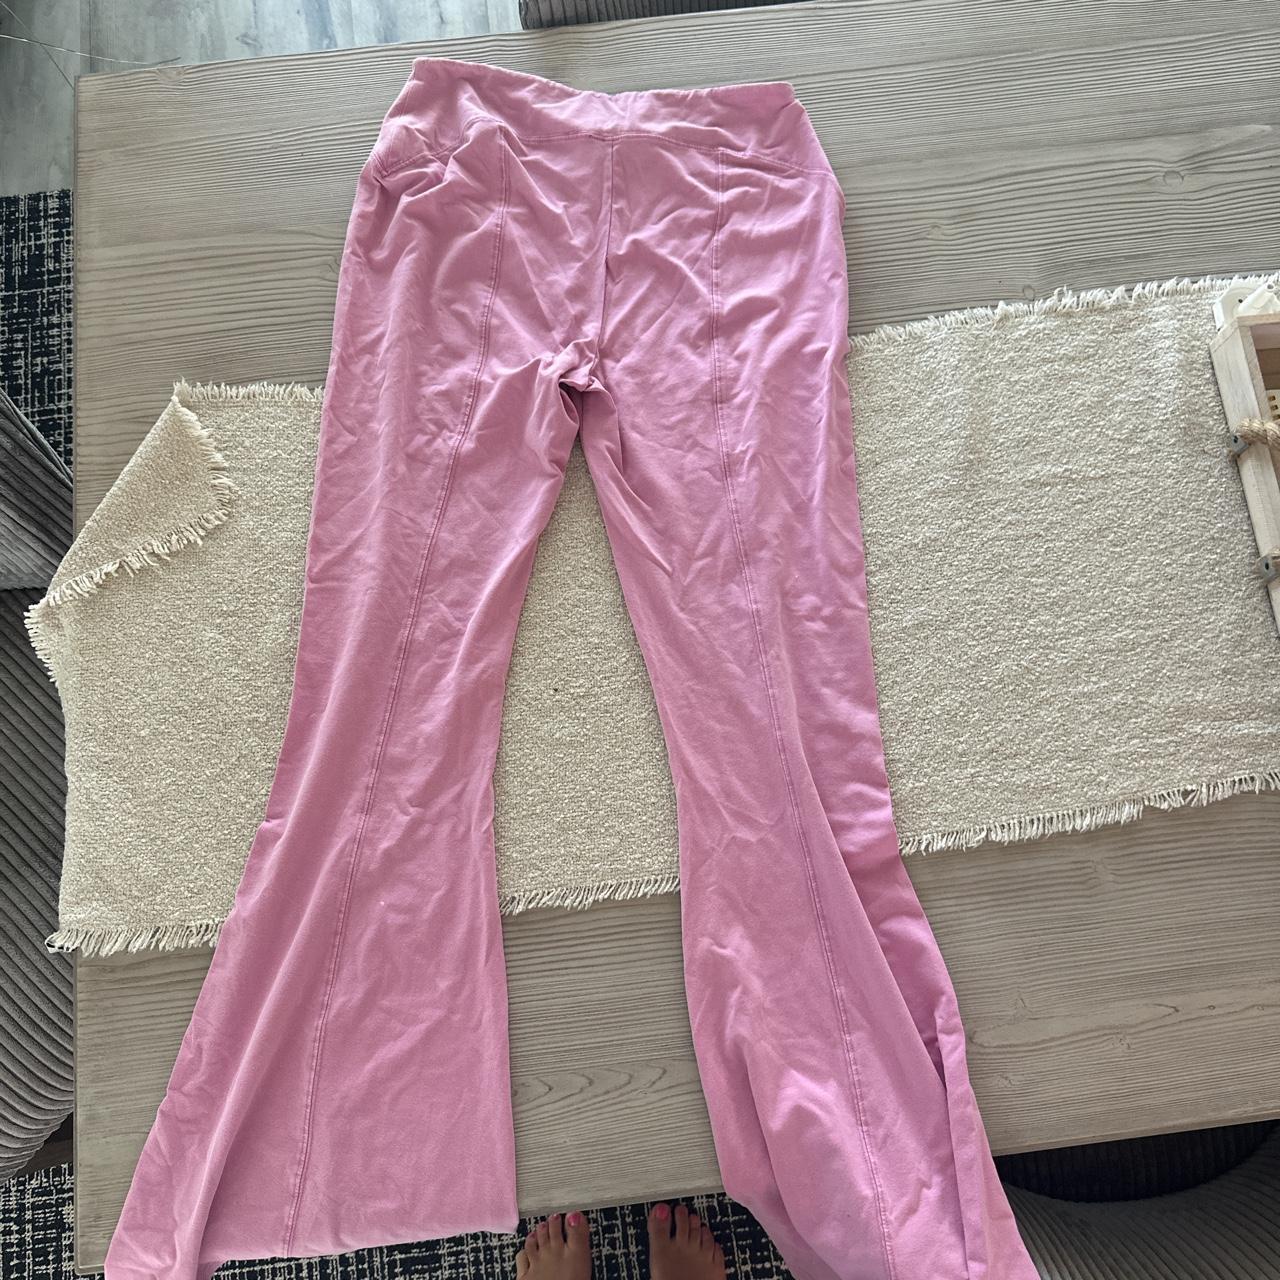 nobo flare sweatpants, size xxl (19). pink purple - Depop